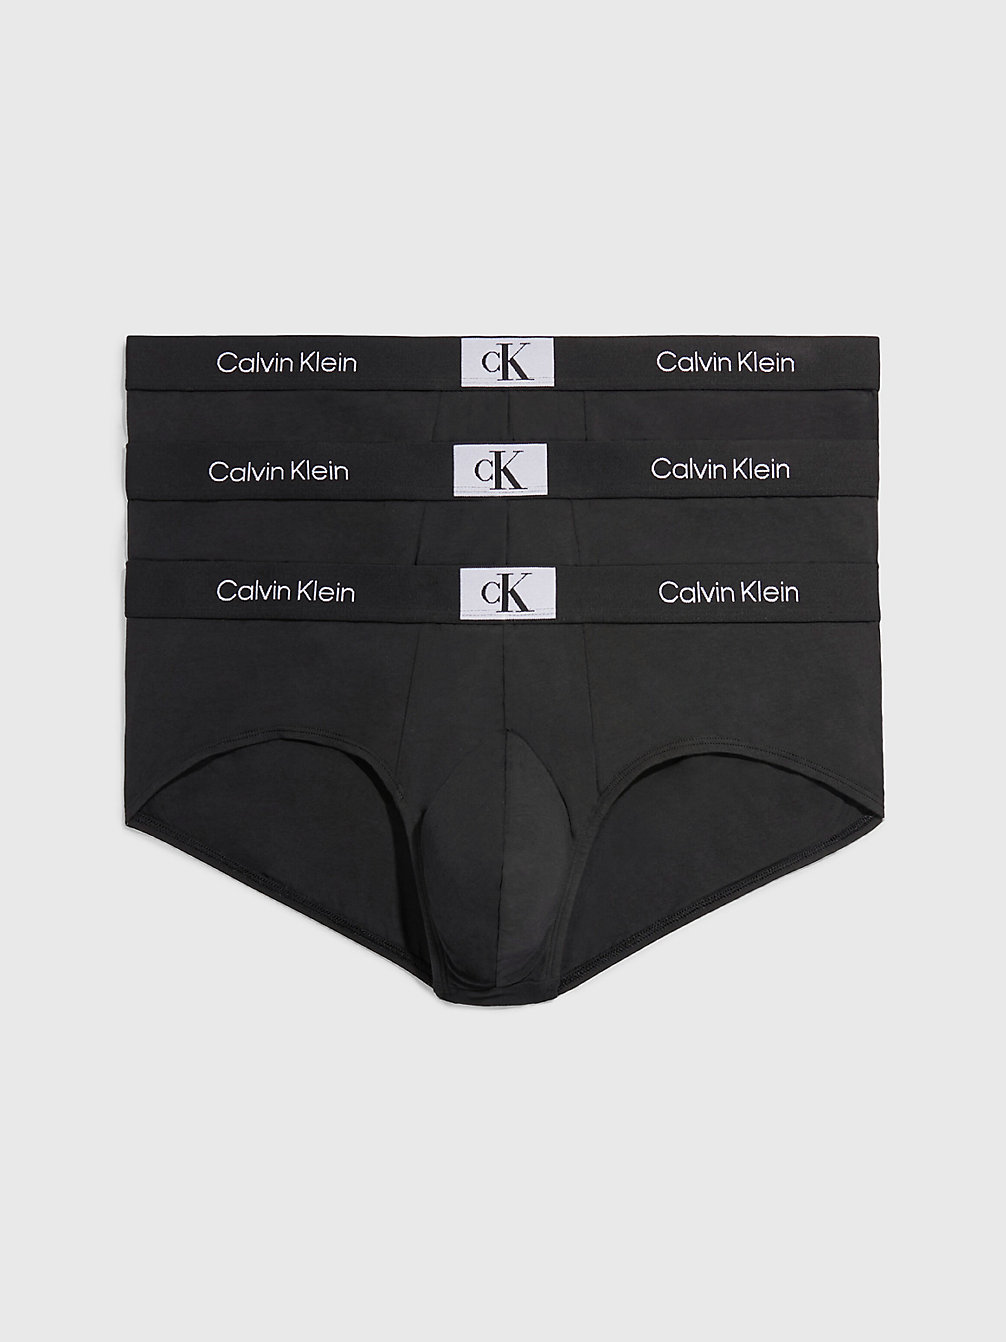 BLACK/ BLACK/ BLACK > Grote Maat 3-Pack Slips - Ck96 > undefined heren - Calvin Klein